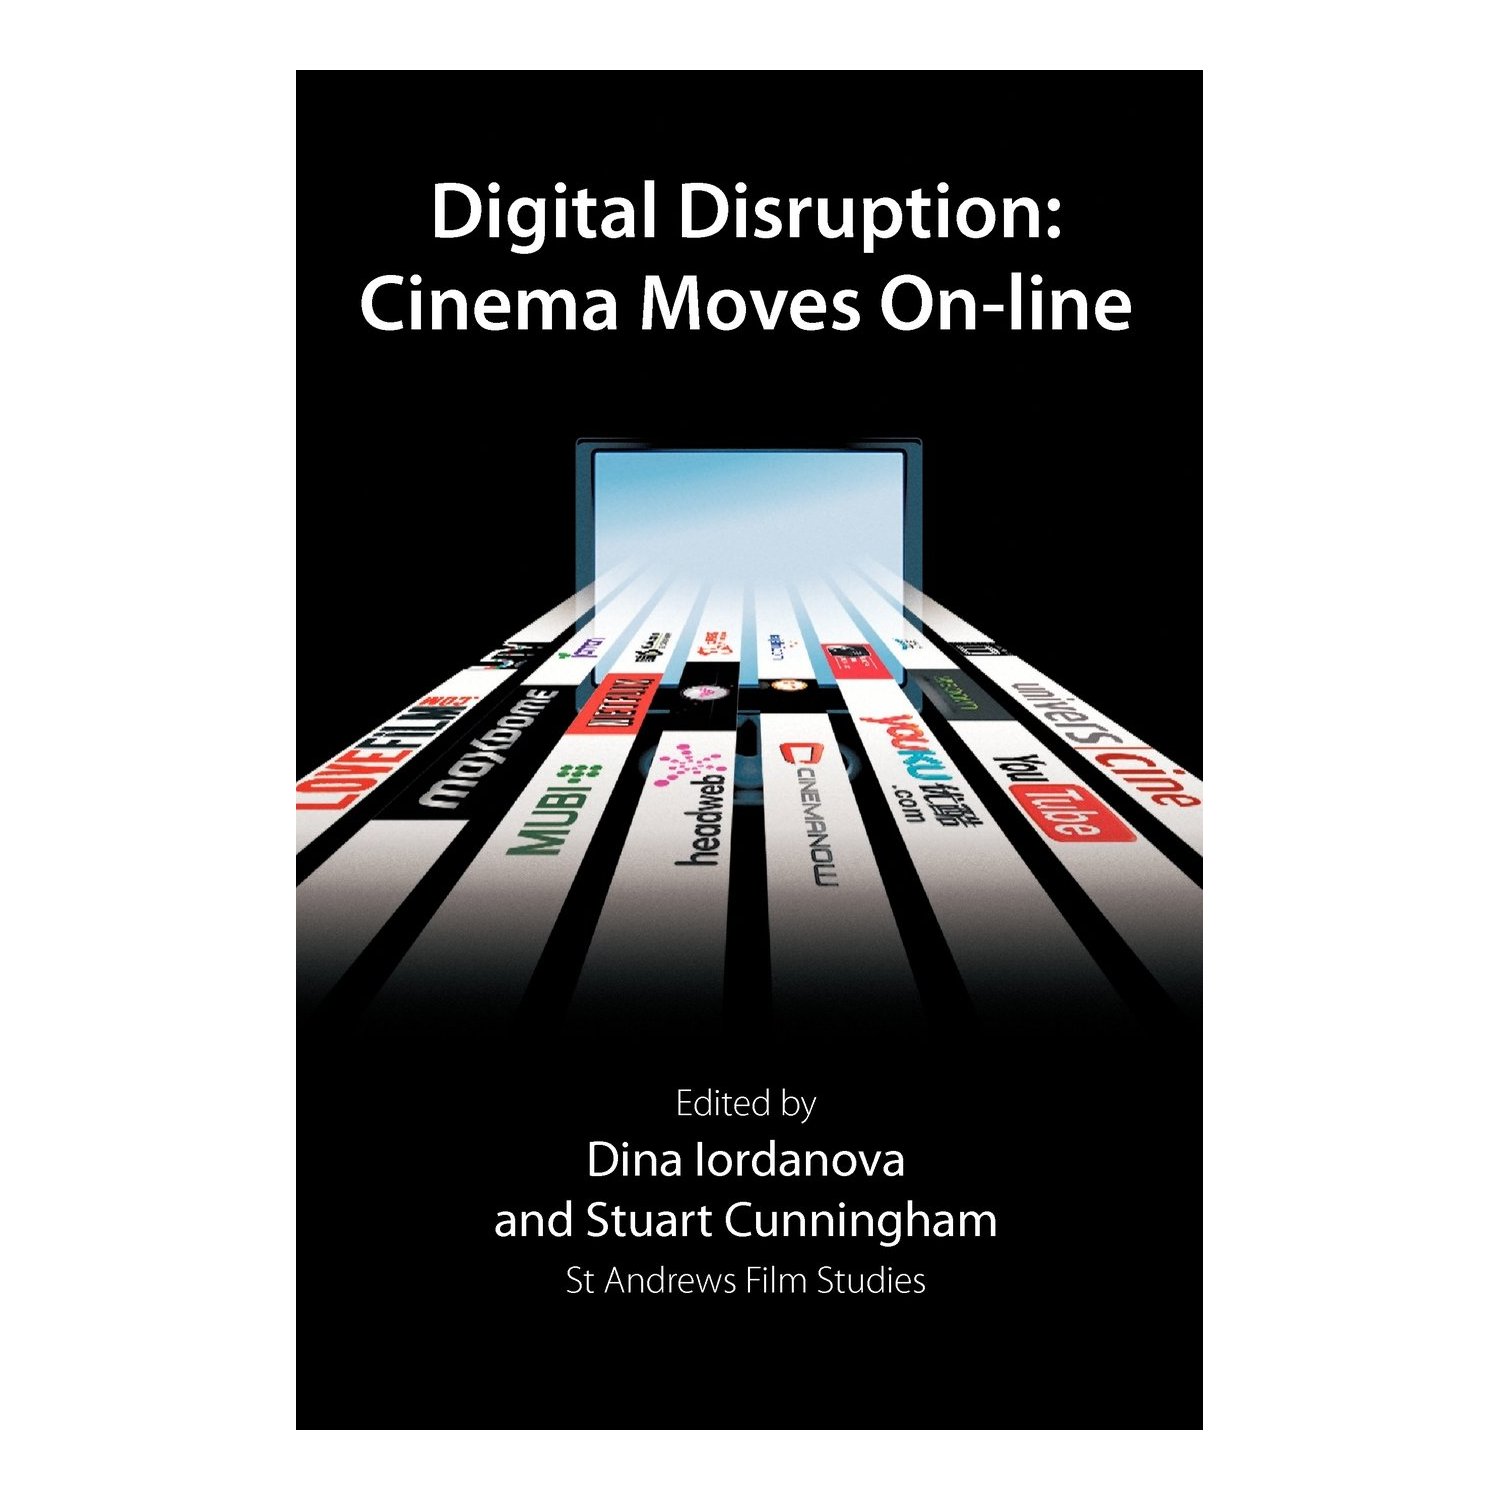 Repenser l’industrie du cinéma à l’ère numérique